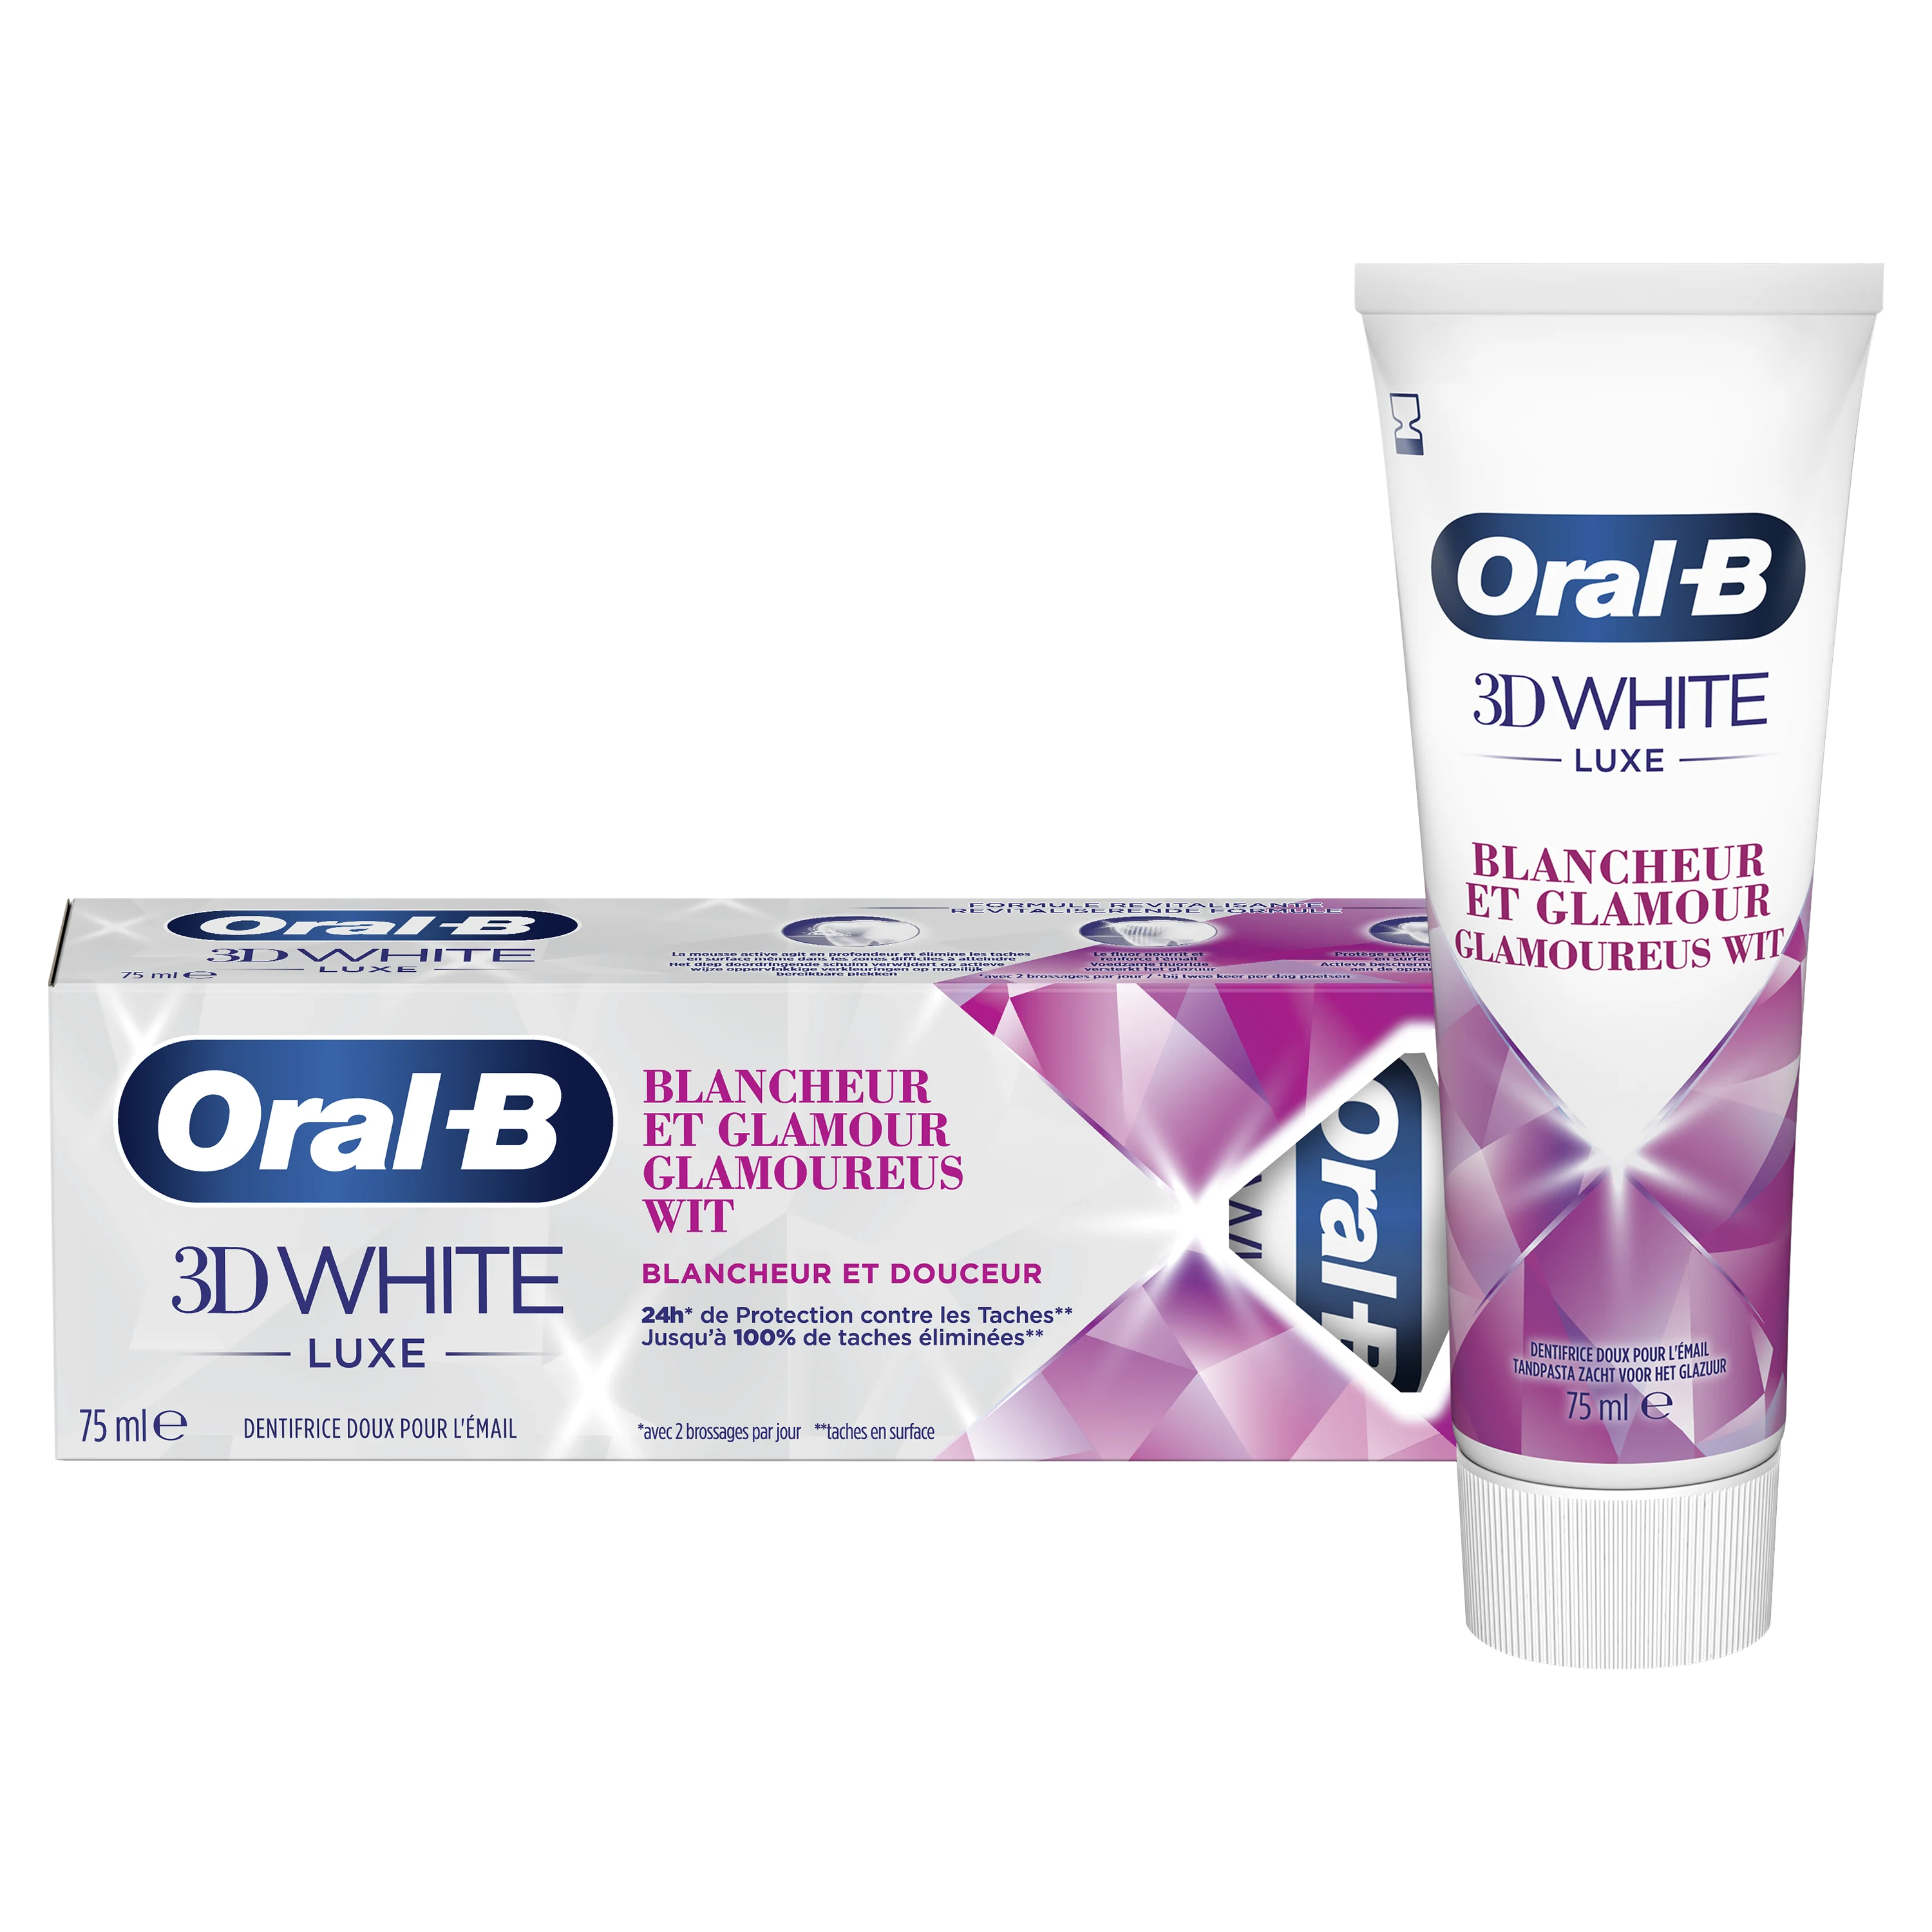 nauwkeurig Phalanx schreeuw Oral-B 3D White Luxe Glamorous White Whitening Tandpasta | Oral-B